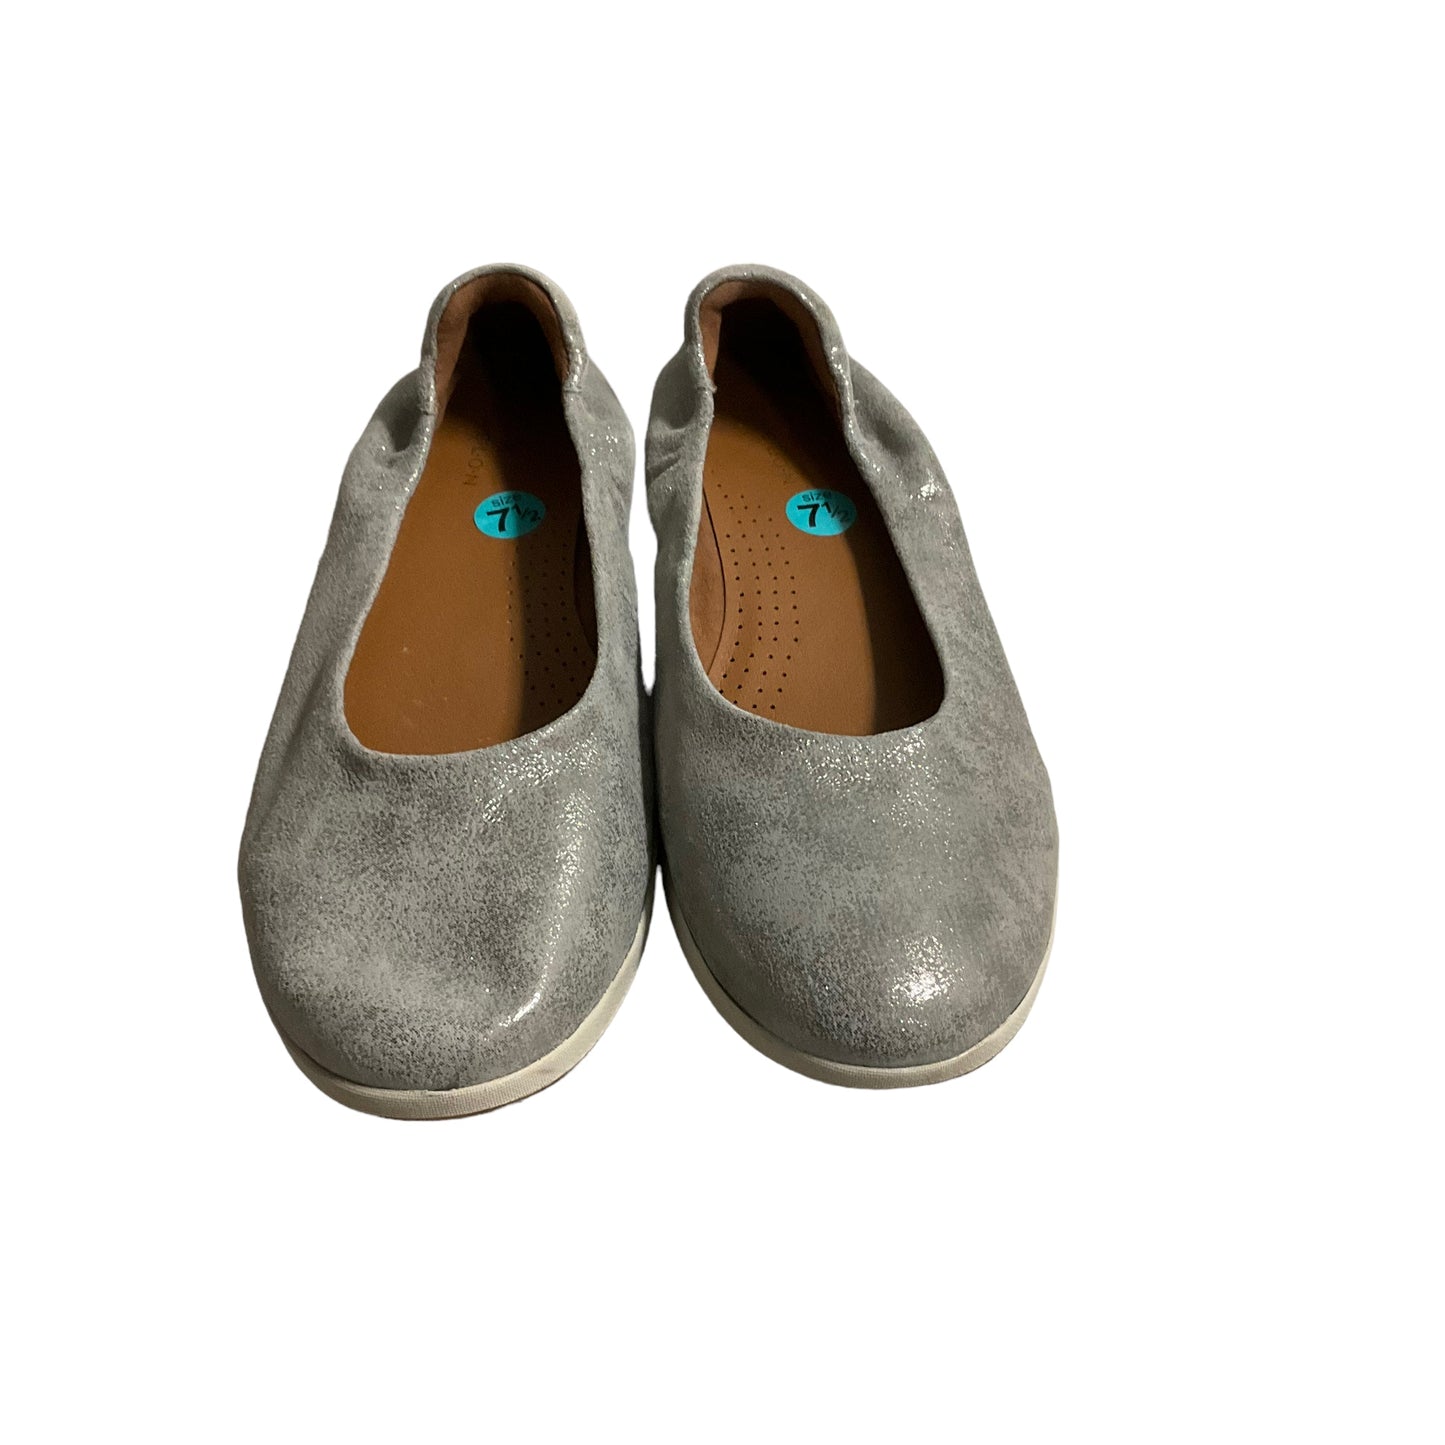 Shoes Flats Ballet By Caslon  Size: 7.5